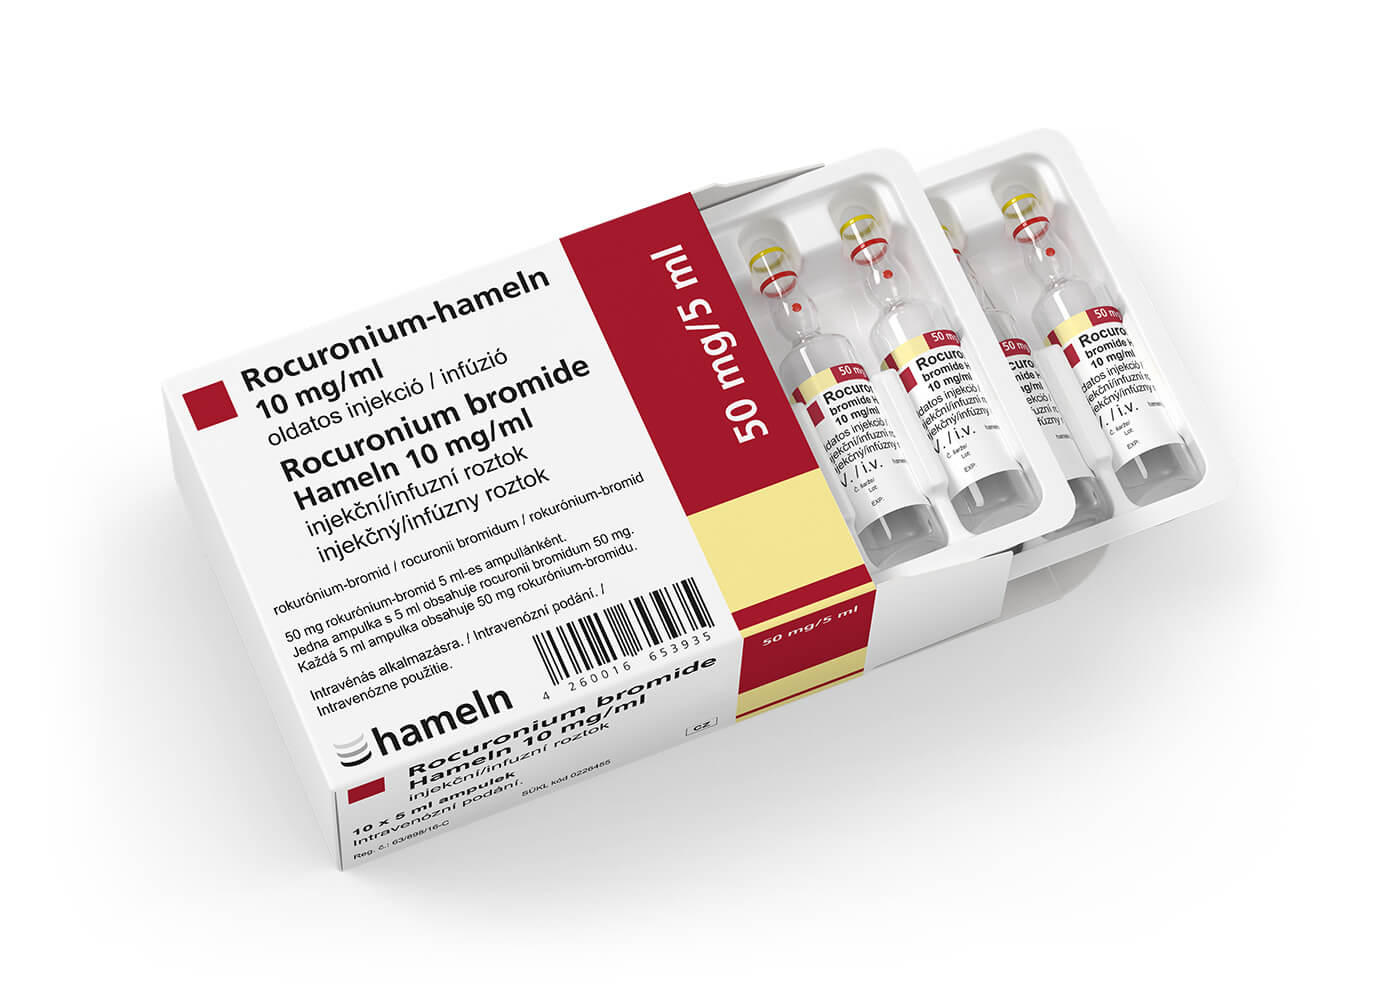 Rocuronium_HU-CZ-SK_10_mg-ml_in_5_ml_Pack-Amp_HBM_10St_2021-04